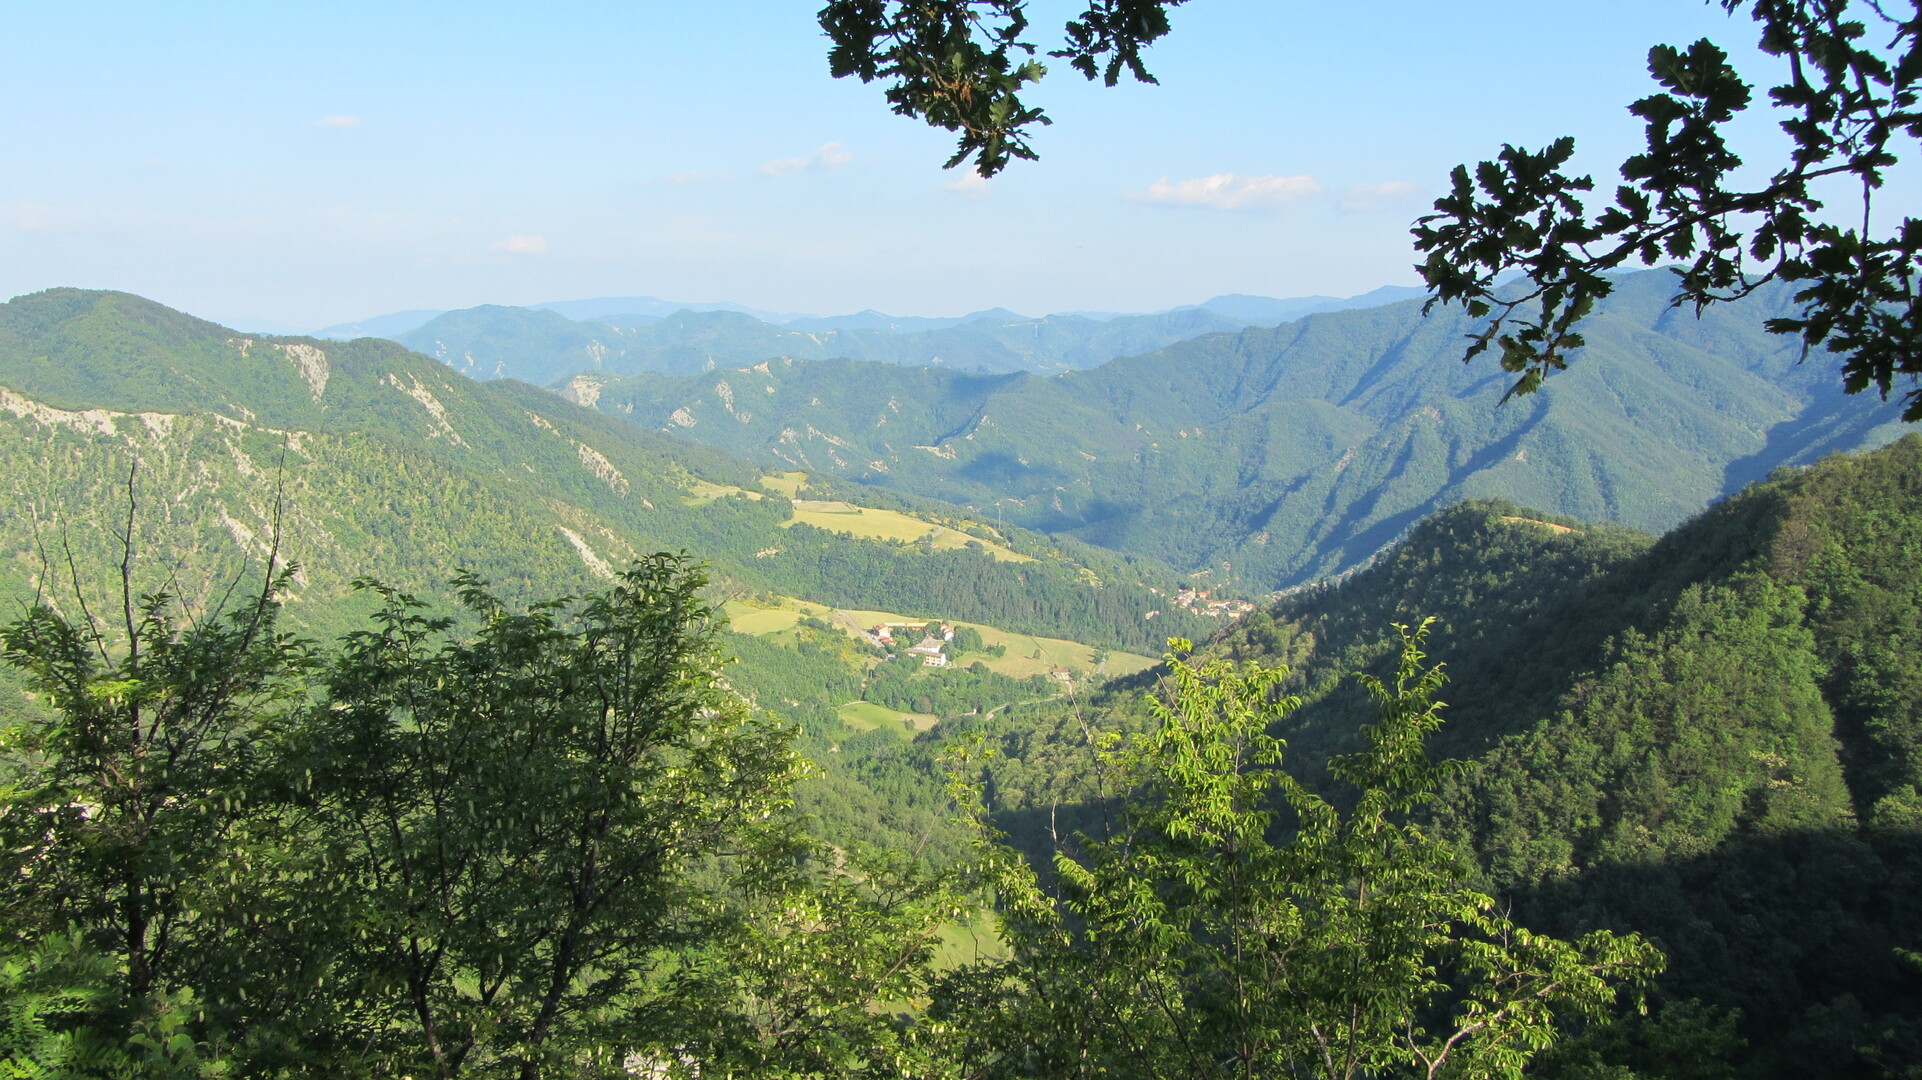 Blick nach Osten von der Paßhöhe aus. Im Tal sieht man Corniolo.